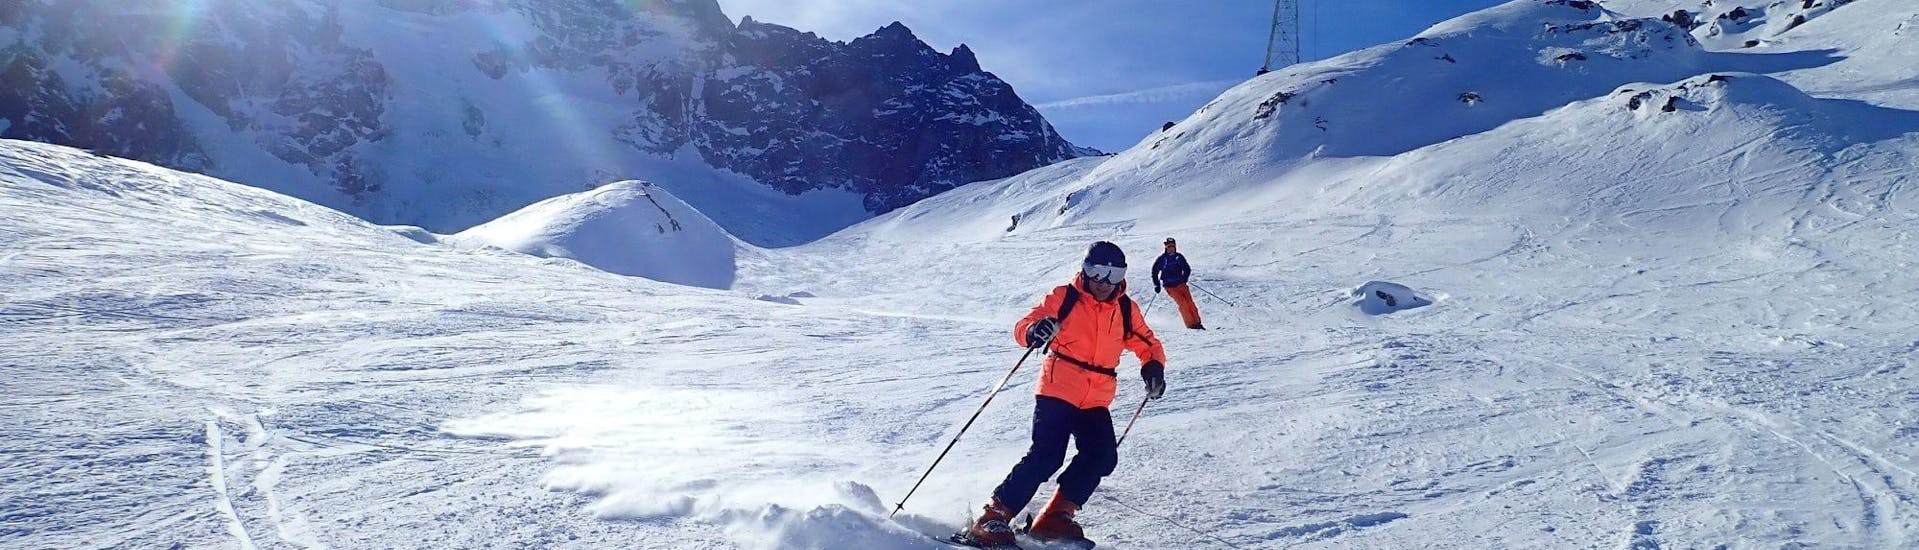 Privé skilessen voor volwassenen van alle niveaus.